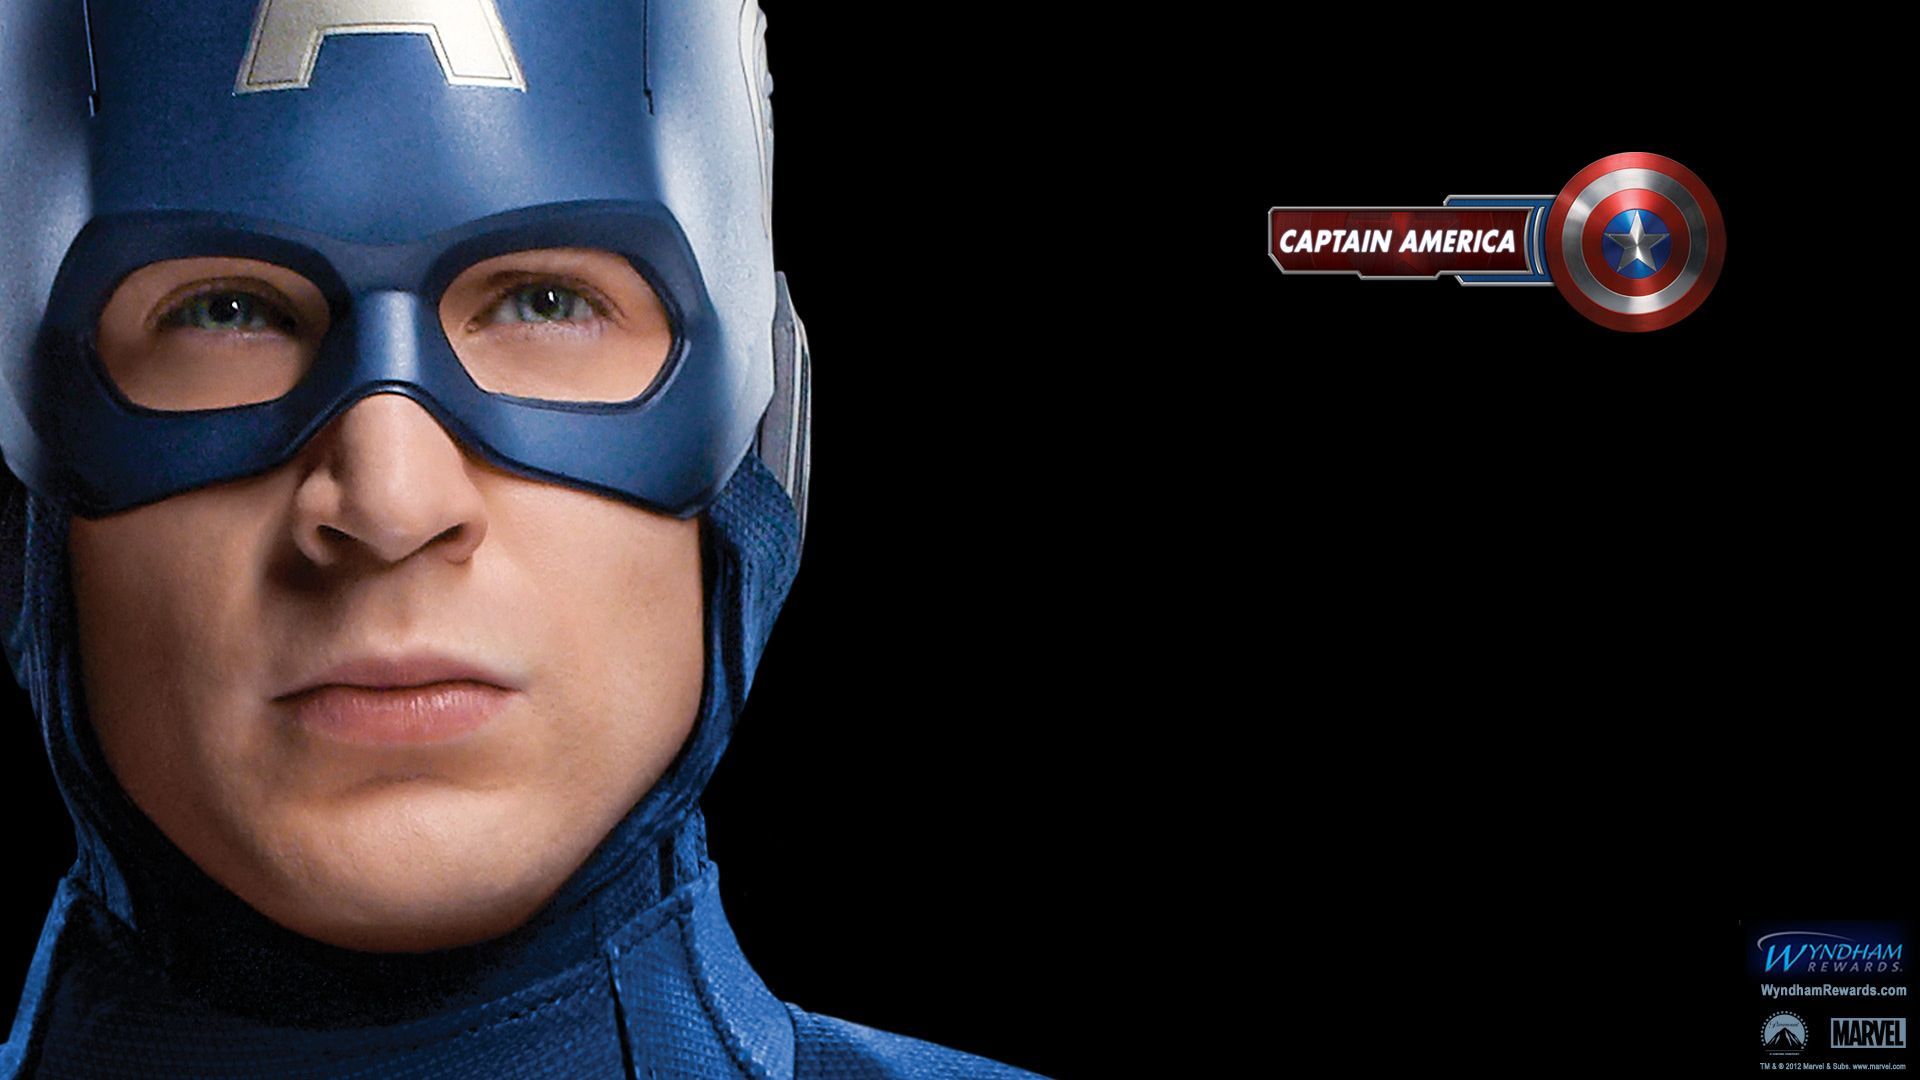 The Avengers Captain America Wallpaper Free The Avengers Captain America Background